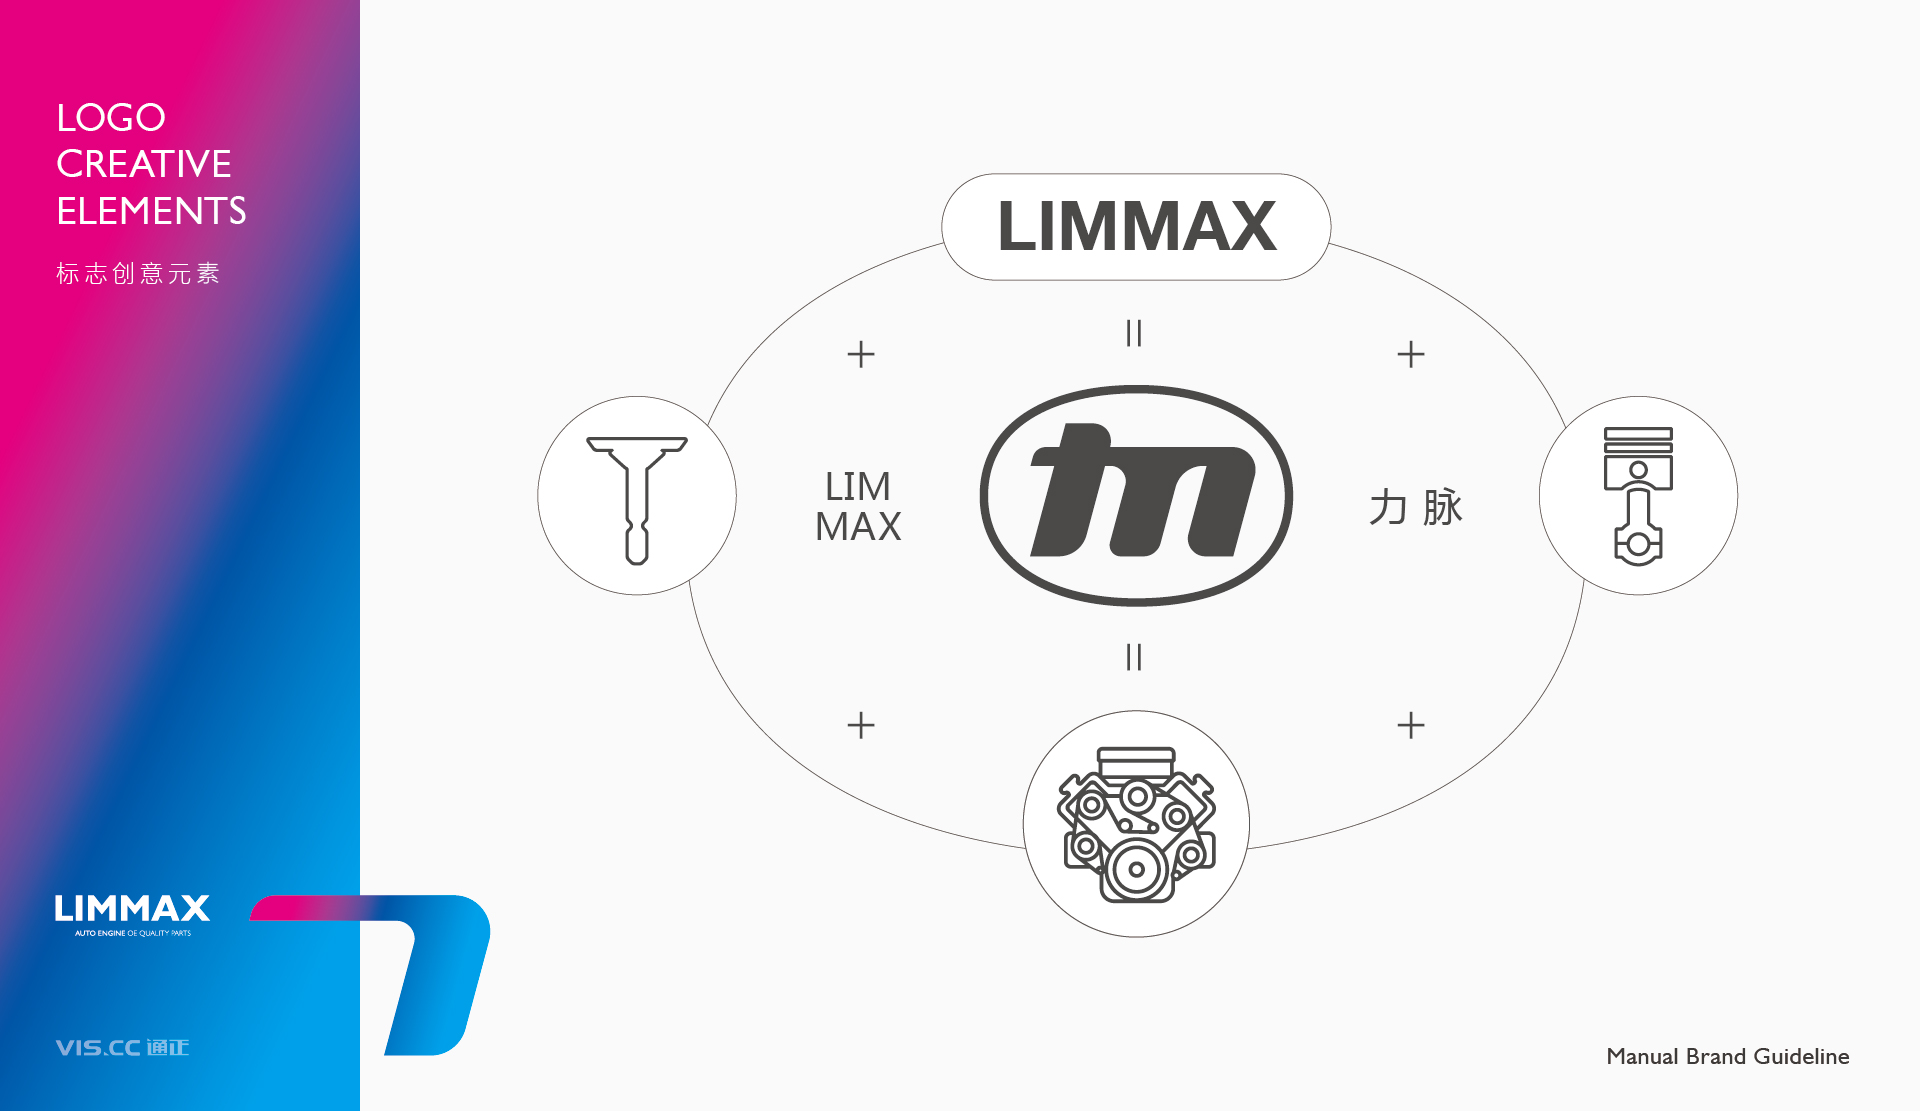 Limmax力脉汽配品牌LOGO_VI设计 20230902 通正设计提供-03